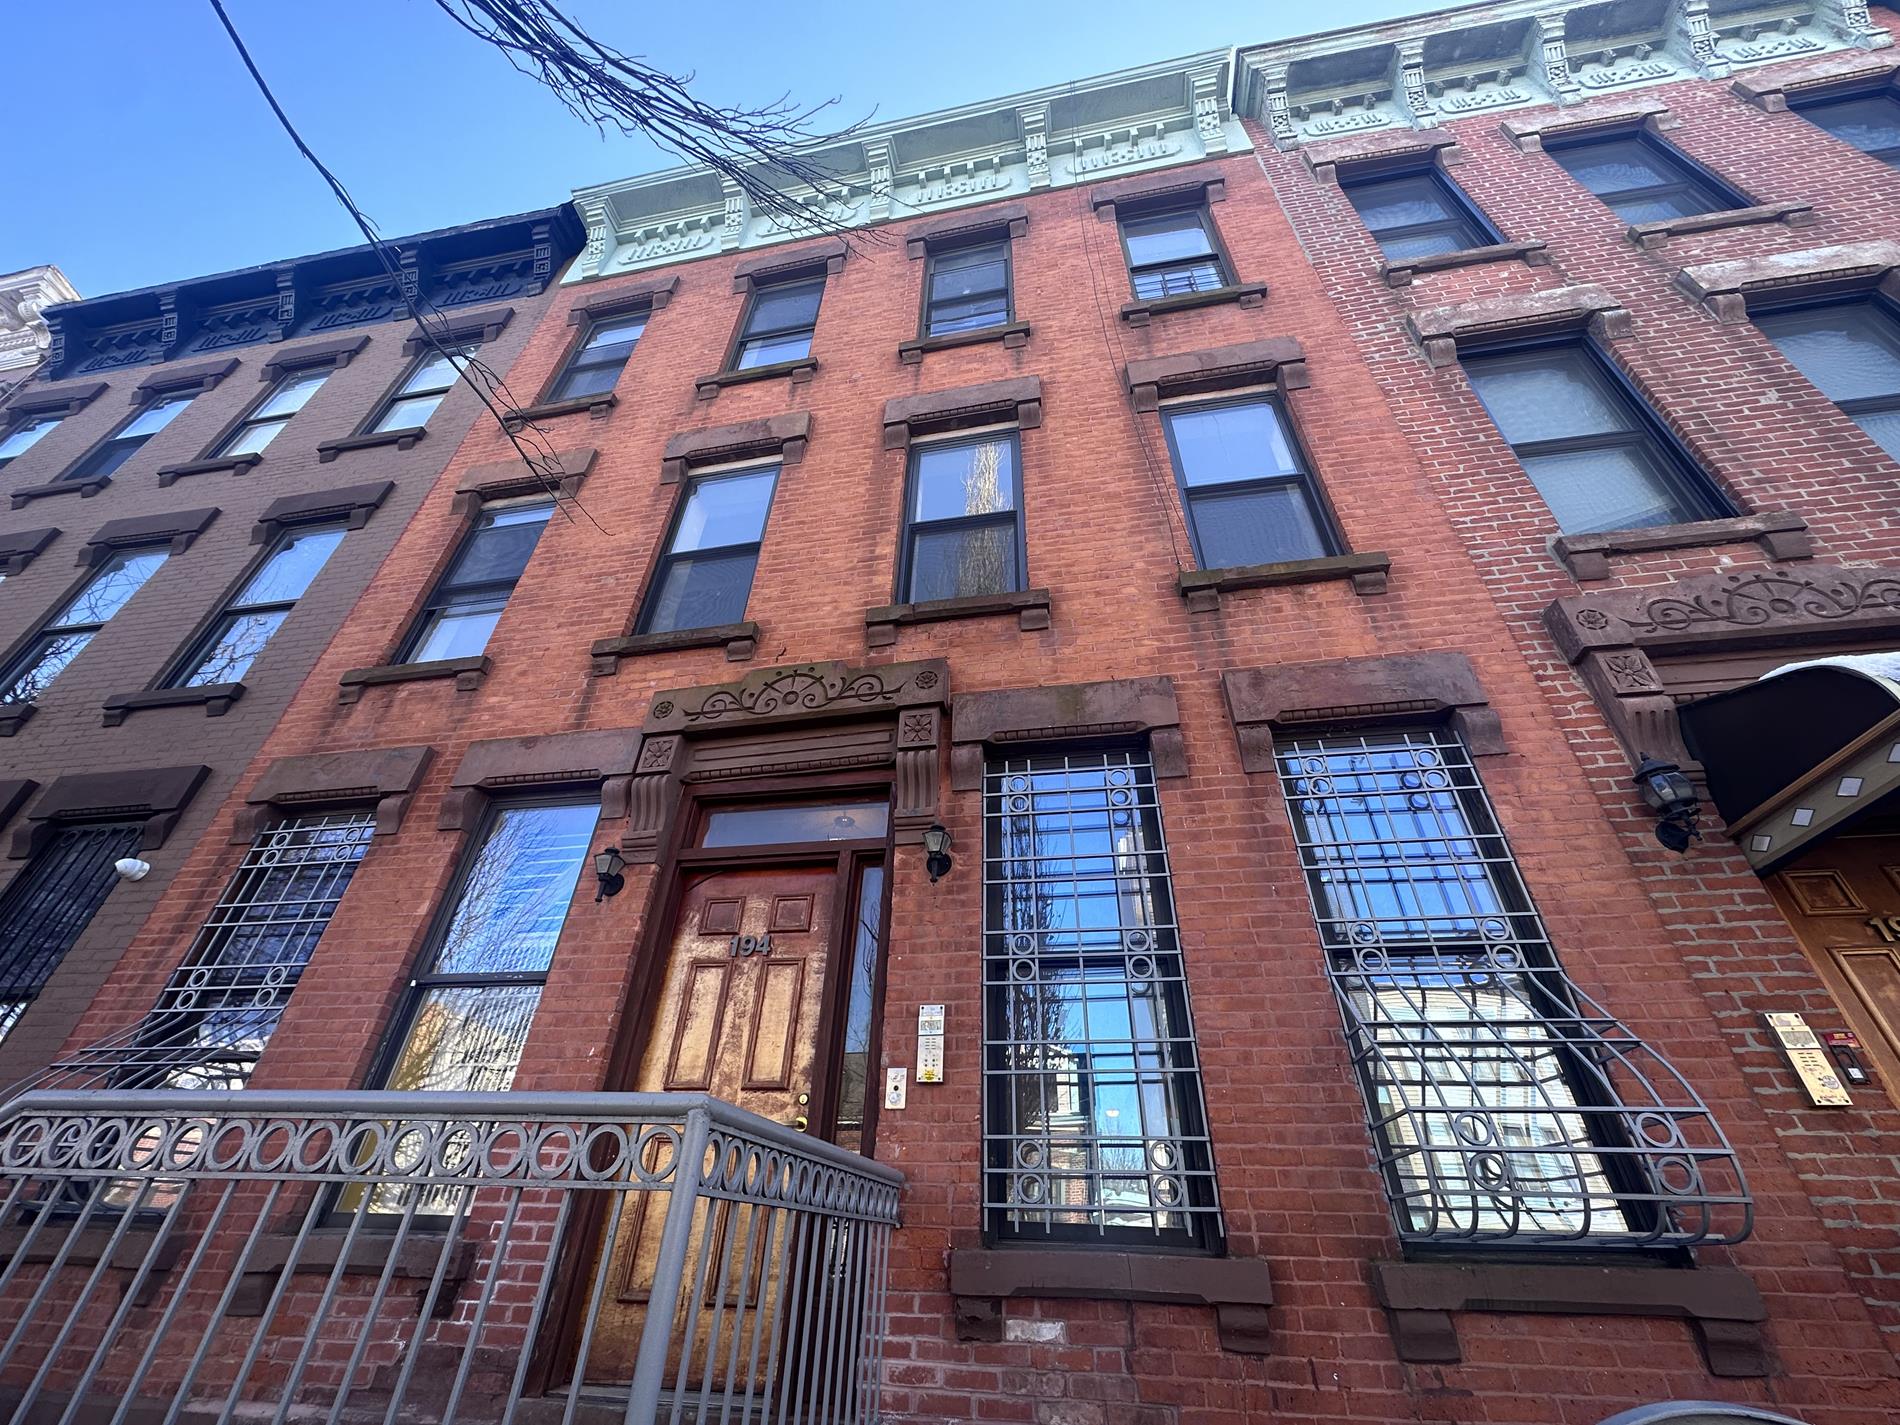 194 Macdougal Street, Bedford Stuyvesant, Brooklyn, New York - 10 Bedrooms  
5.5 Bathrooms  
22 Rooms - 